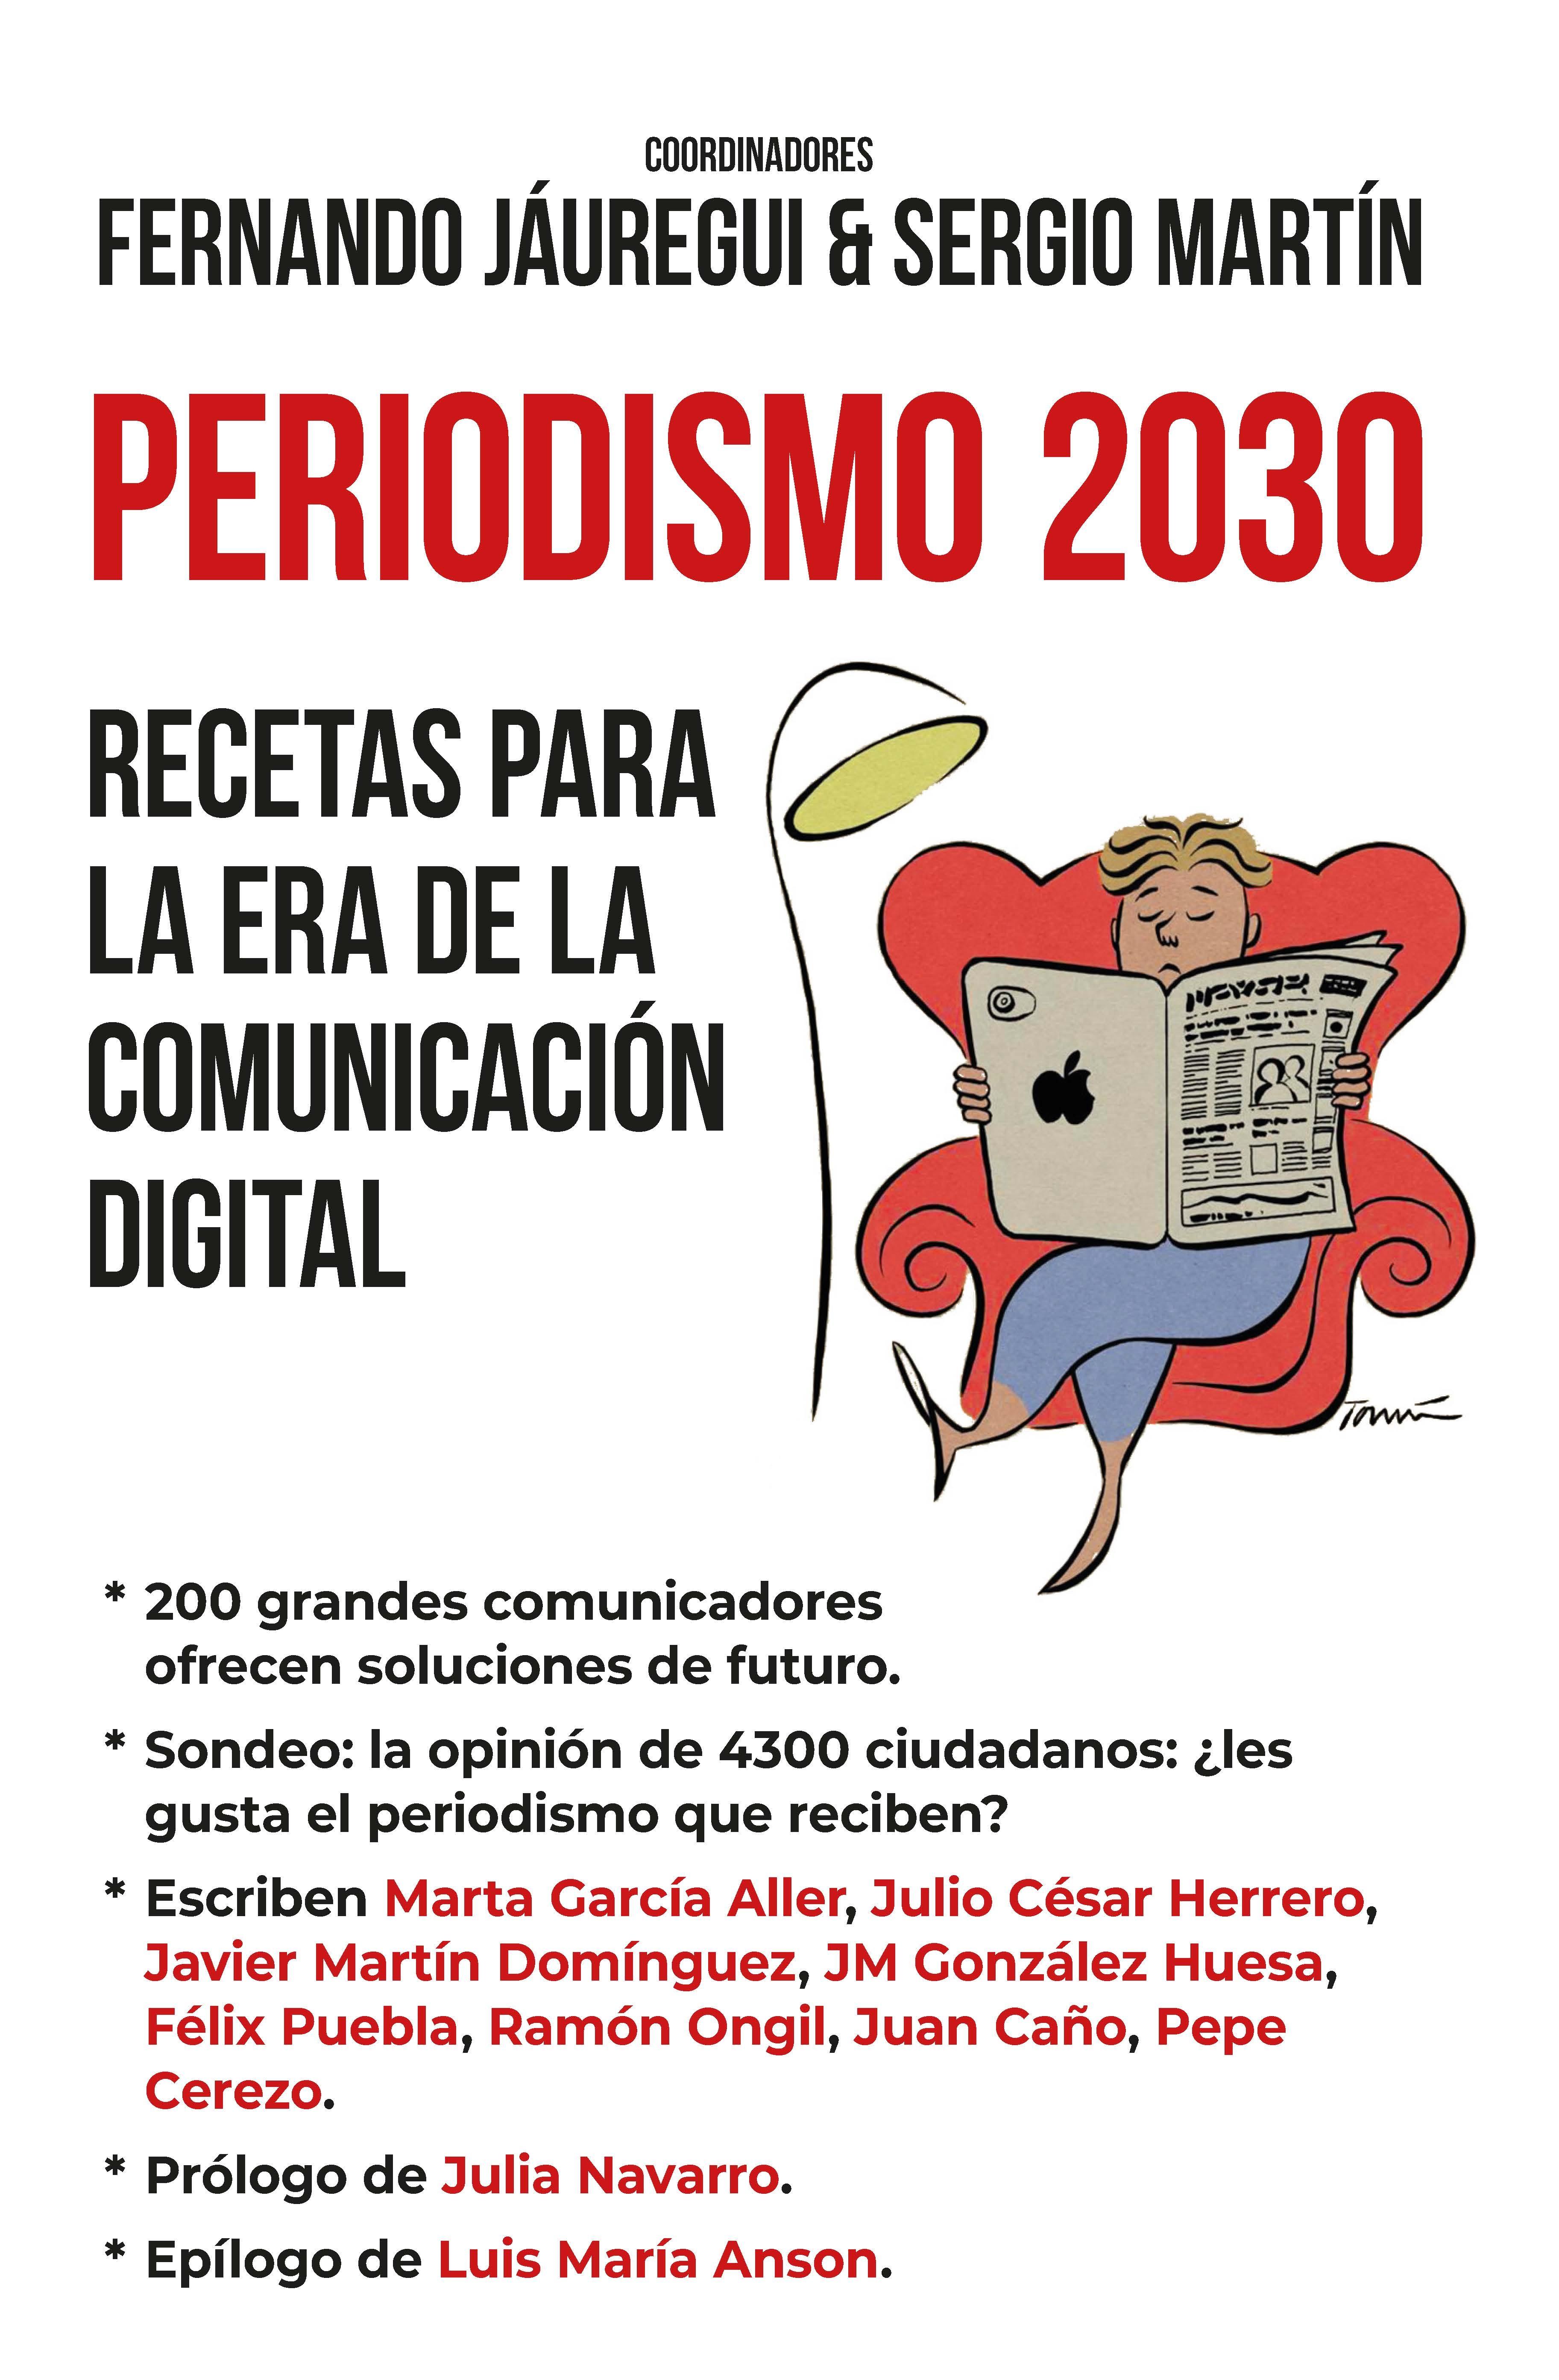 Periodismo 2030 "Recetas para la era de la comunicación digital"